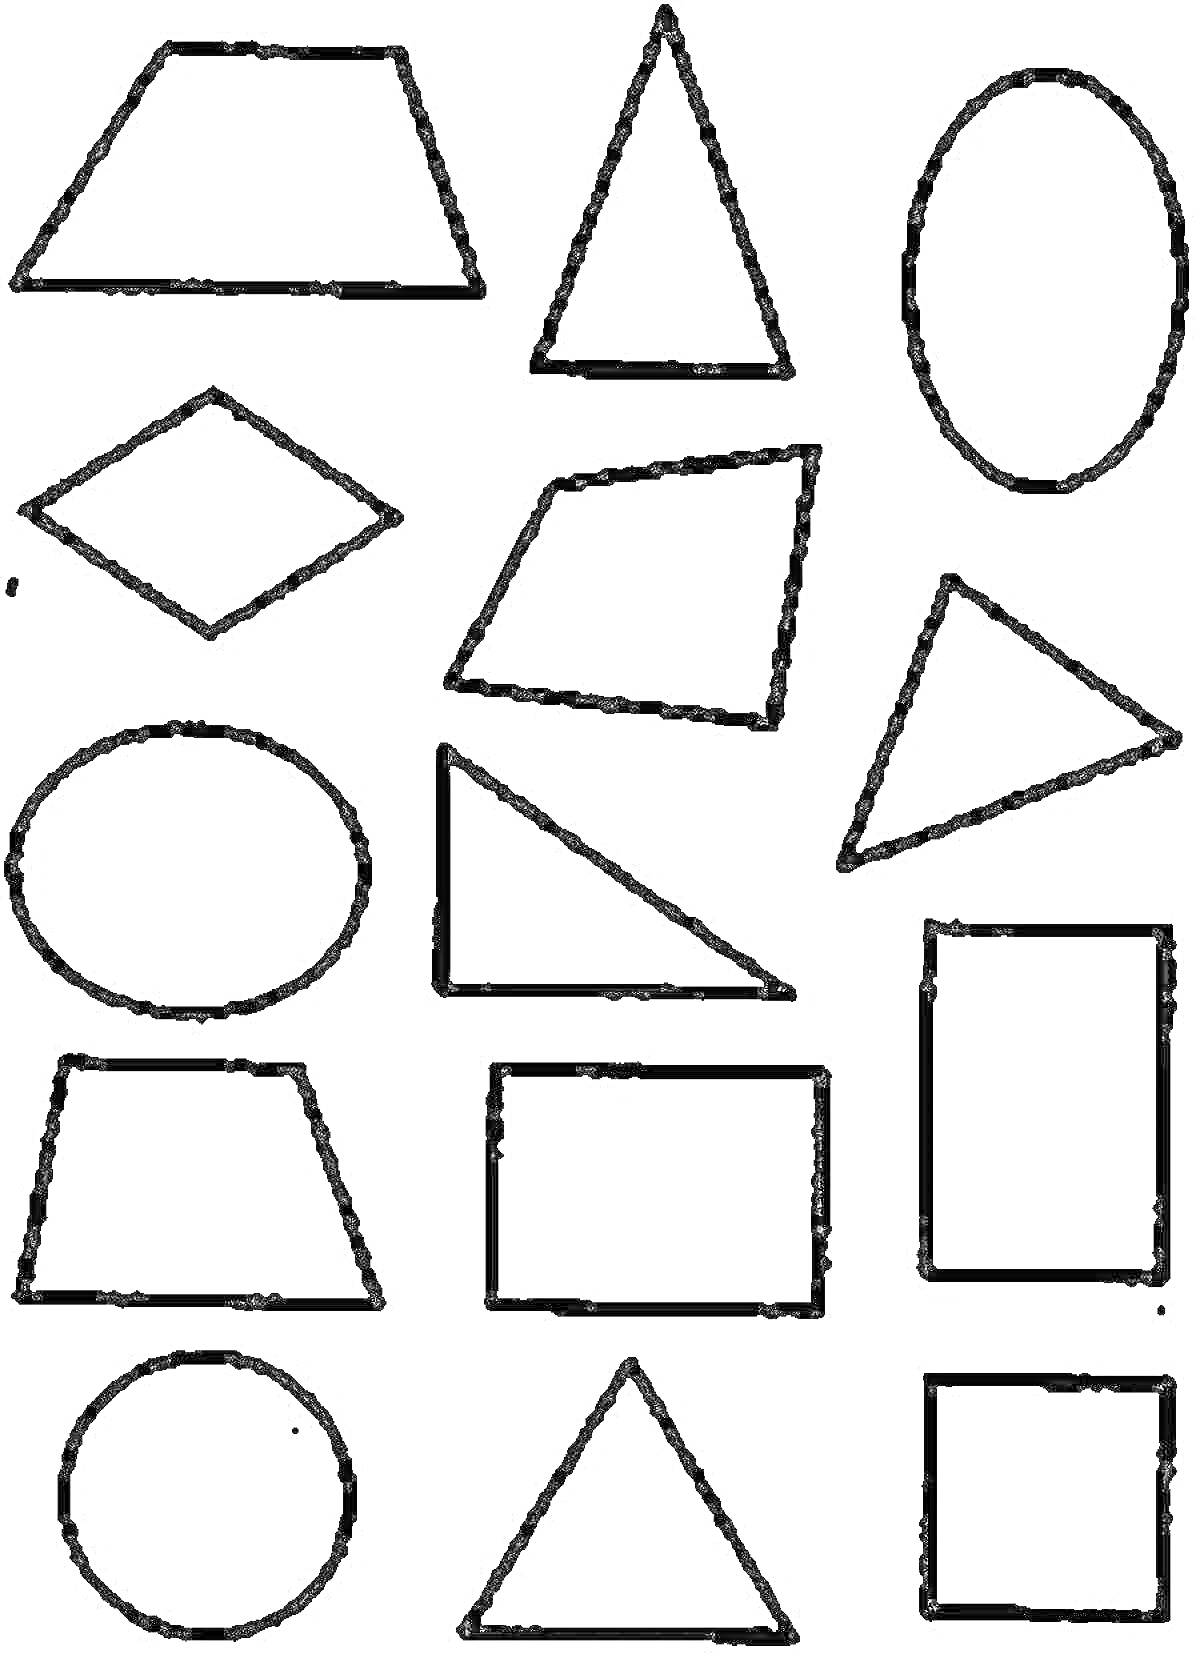 Разнообразные геометрические фигуры - трапеция, треугольник, овал, ромб, прямоугольник, круг